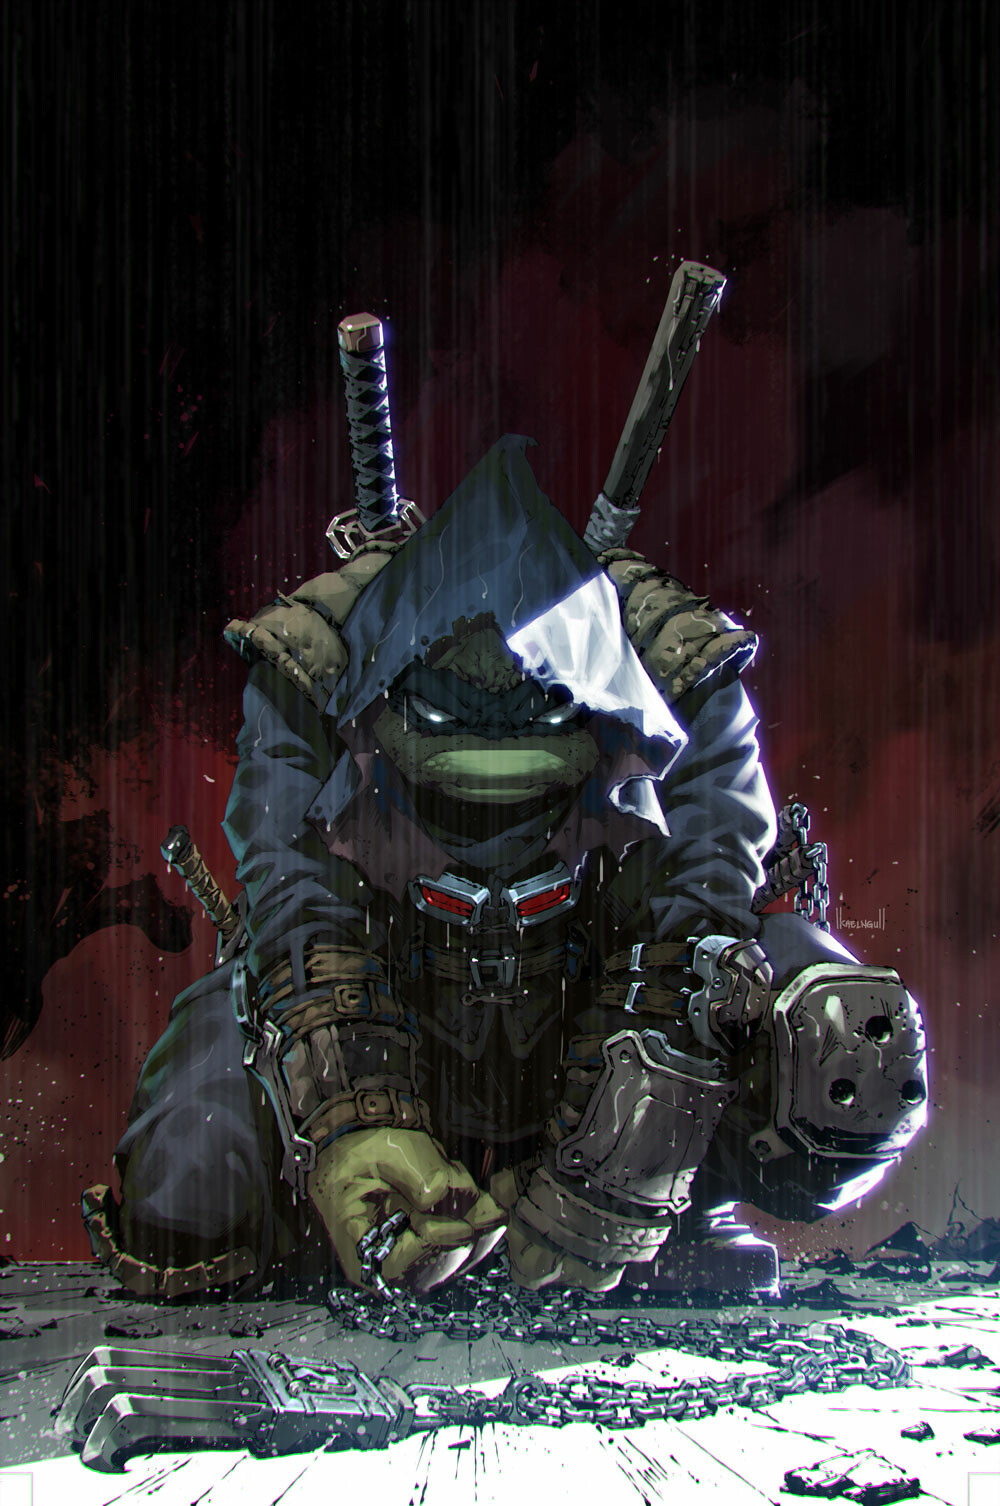 TMNT, The Last Ronin # Kael Ngu. Teenage mutant ninja turtles artwork, Teenage mutant ninja turtles art, Ninja turtles artwork